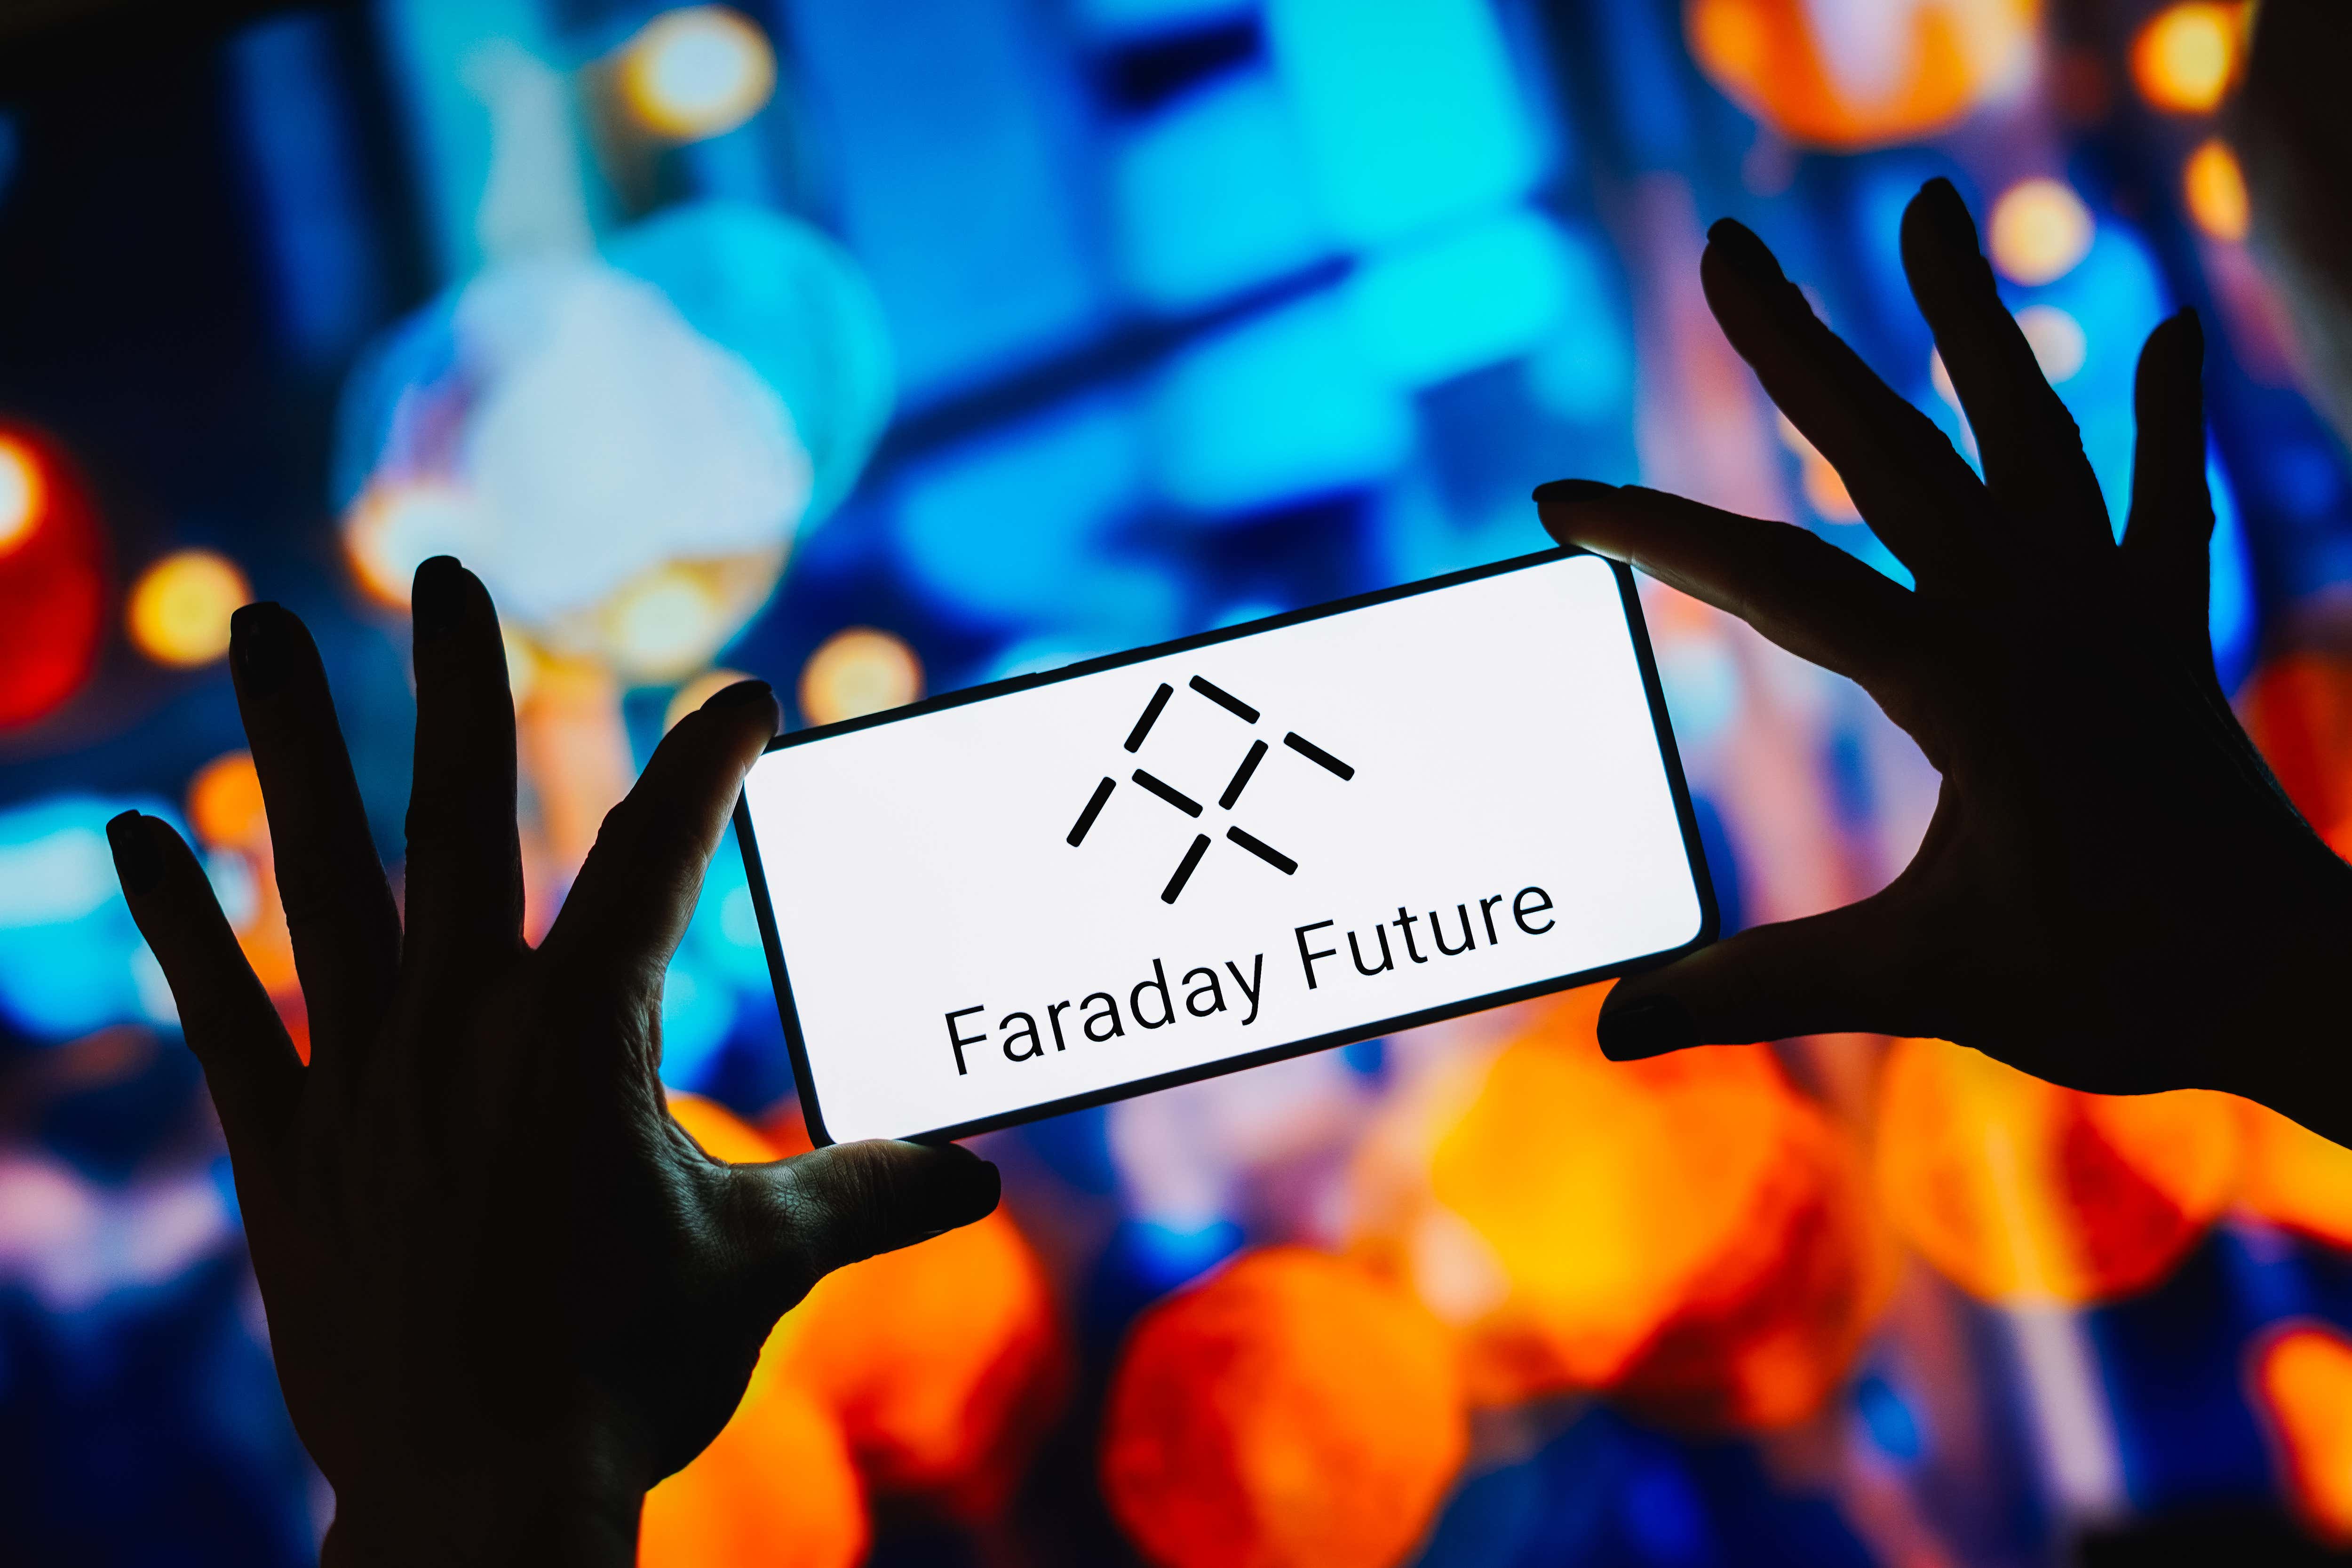 Auf dieser Fotoillustration wird das Faraday Future-Logo auf einem Smartphone-Bildschirm angezeigt